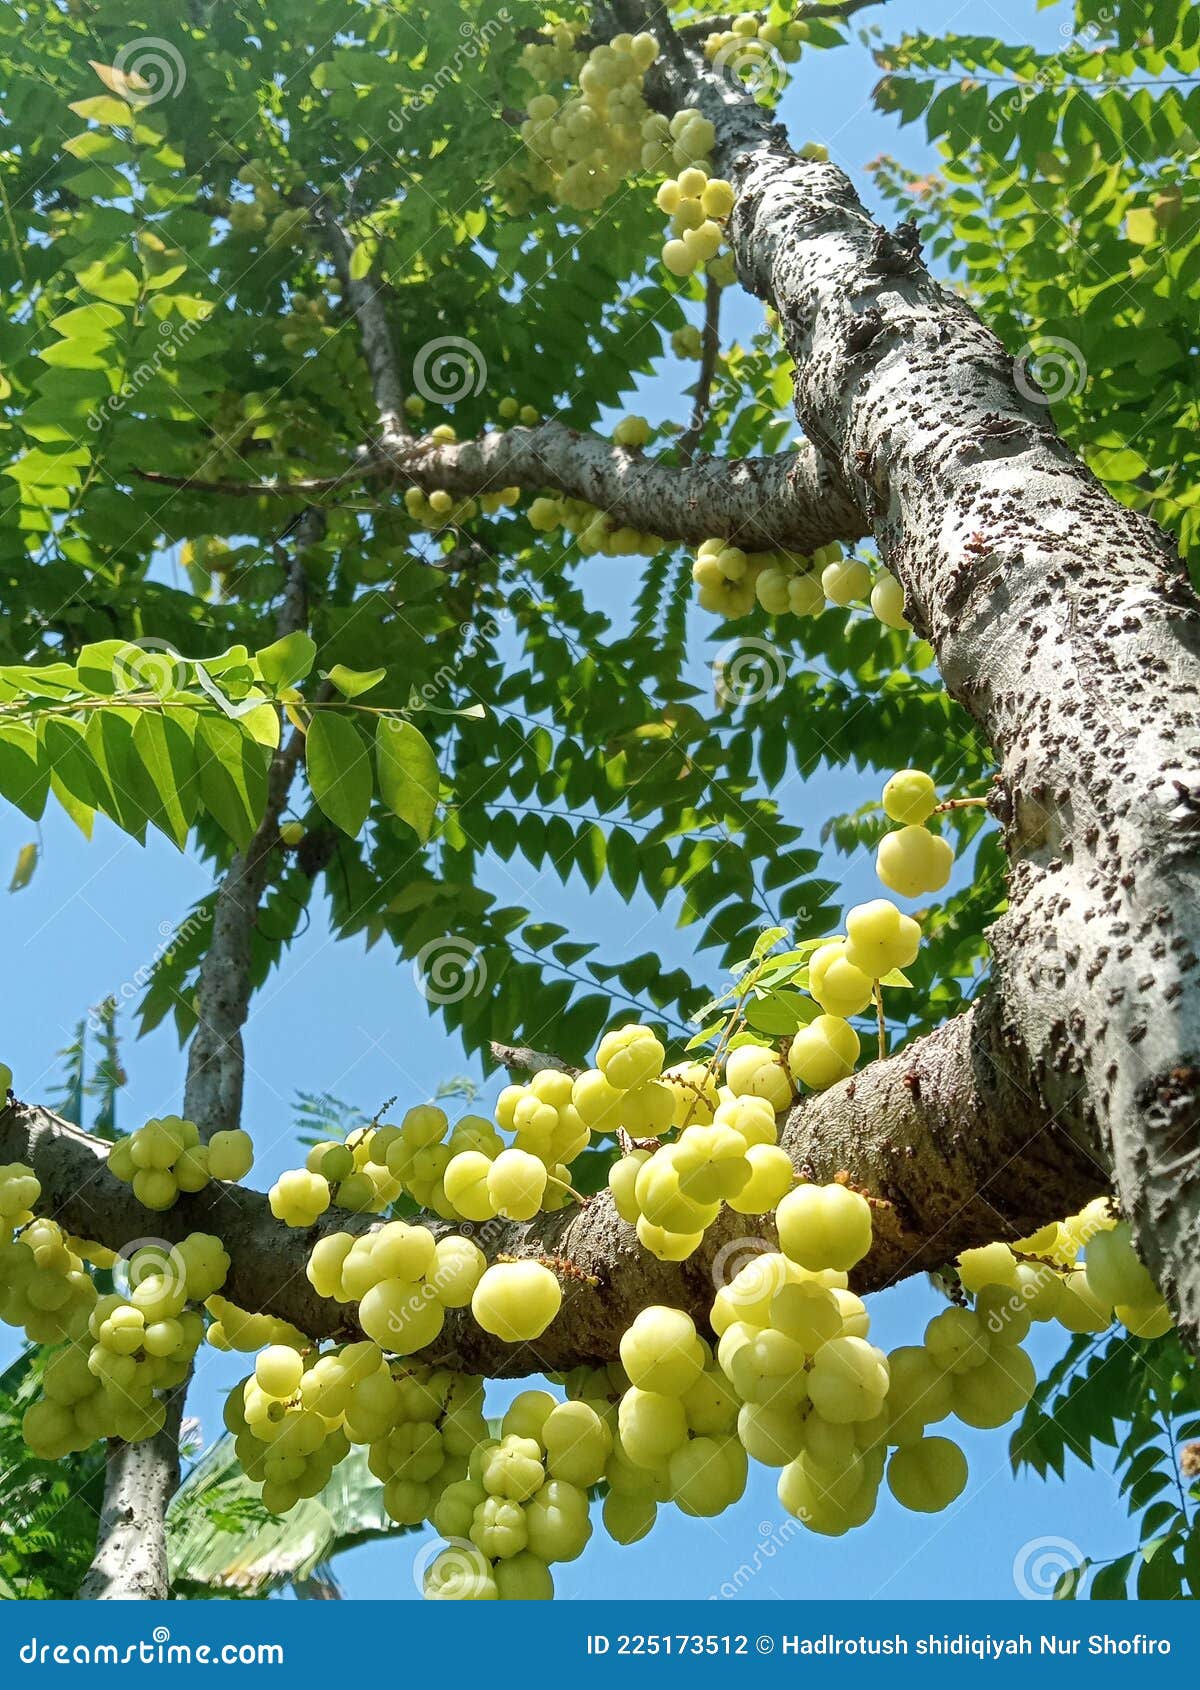 成熟的鹅莓. 一束鹅莓在树枝上 库存图片. 图片 包括有 点心, 特写镜头, 新鲜, 工厂, 营养, 收获 - 209004887